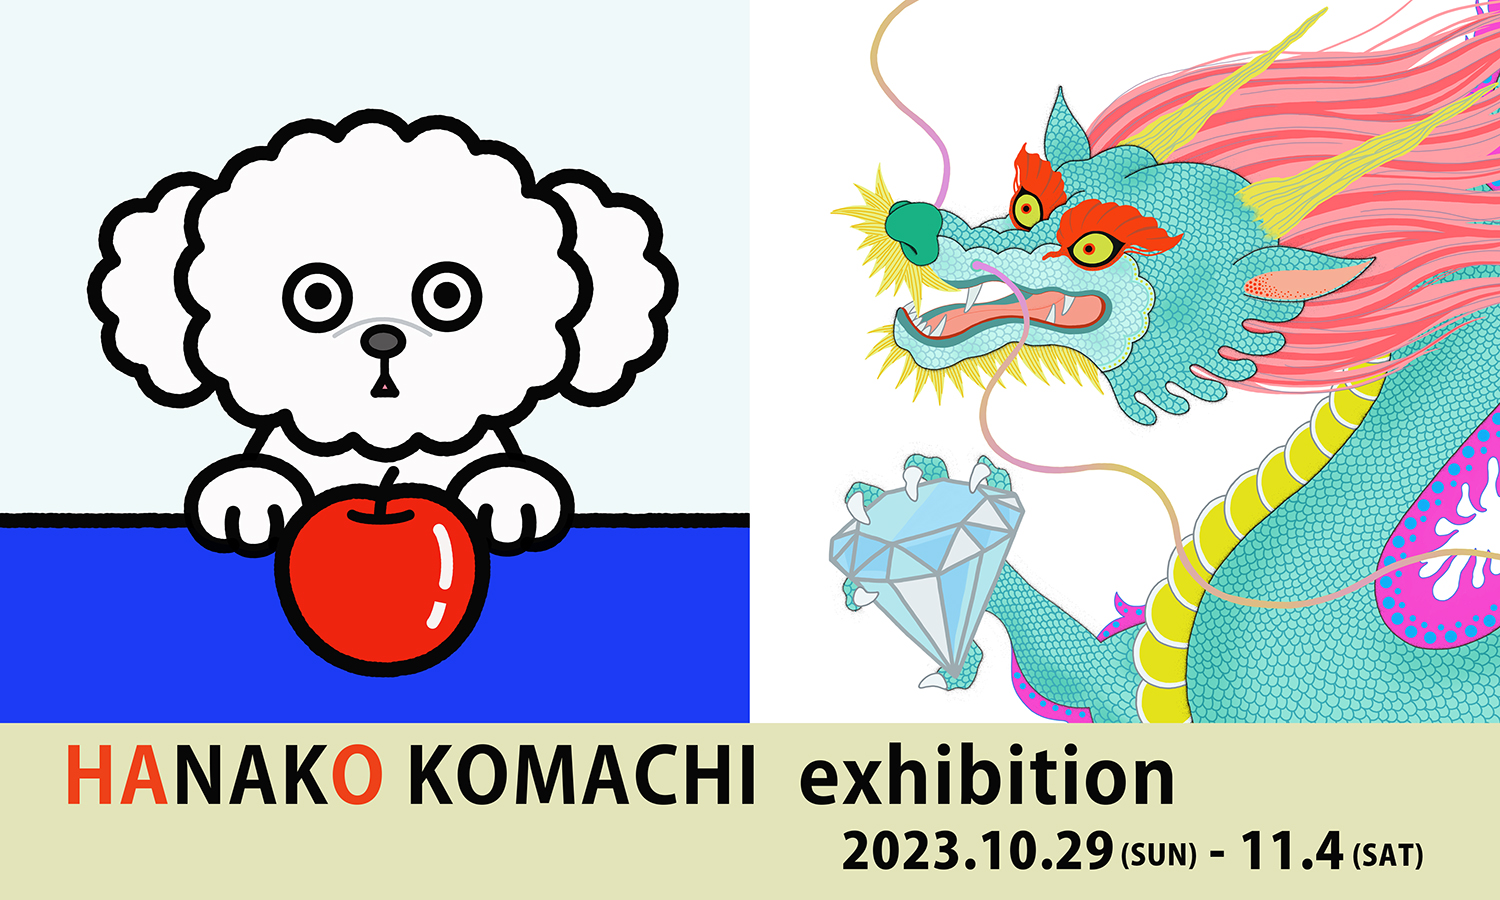 コマチハナコ展　HANAKO KOMACHI exhibition 2023年10月29日(日)-11月4日(土)